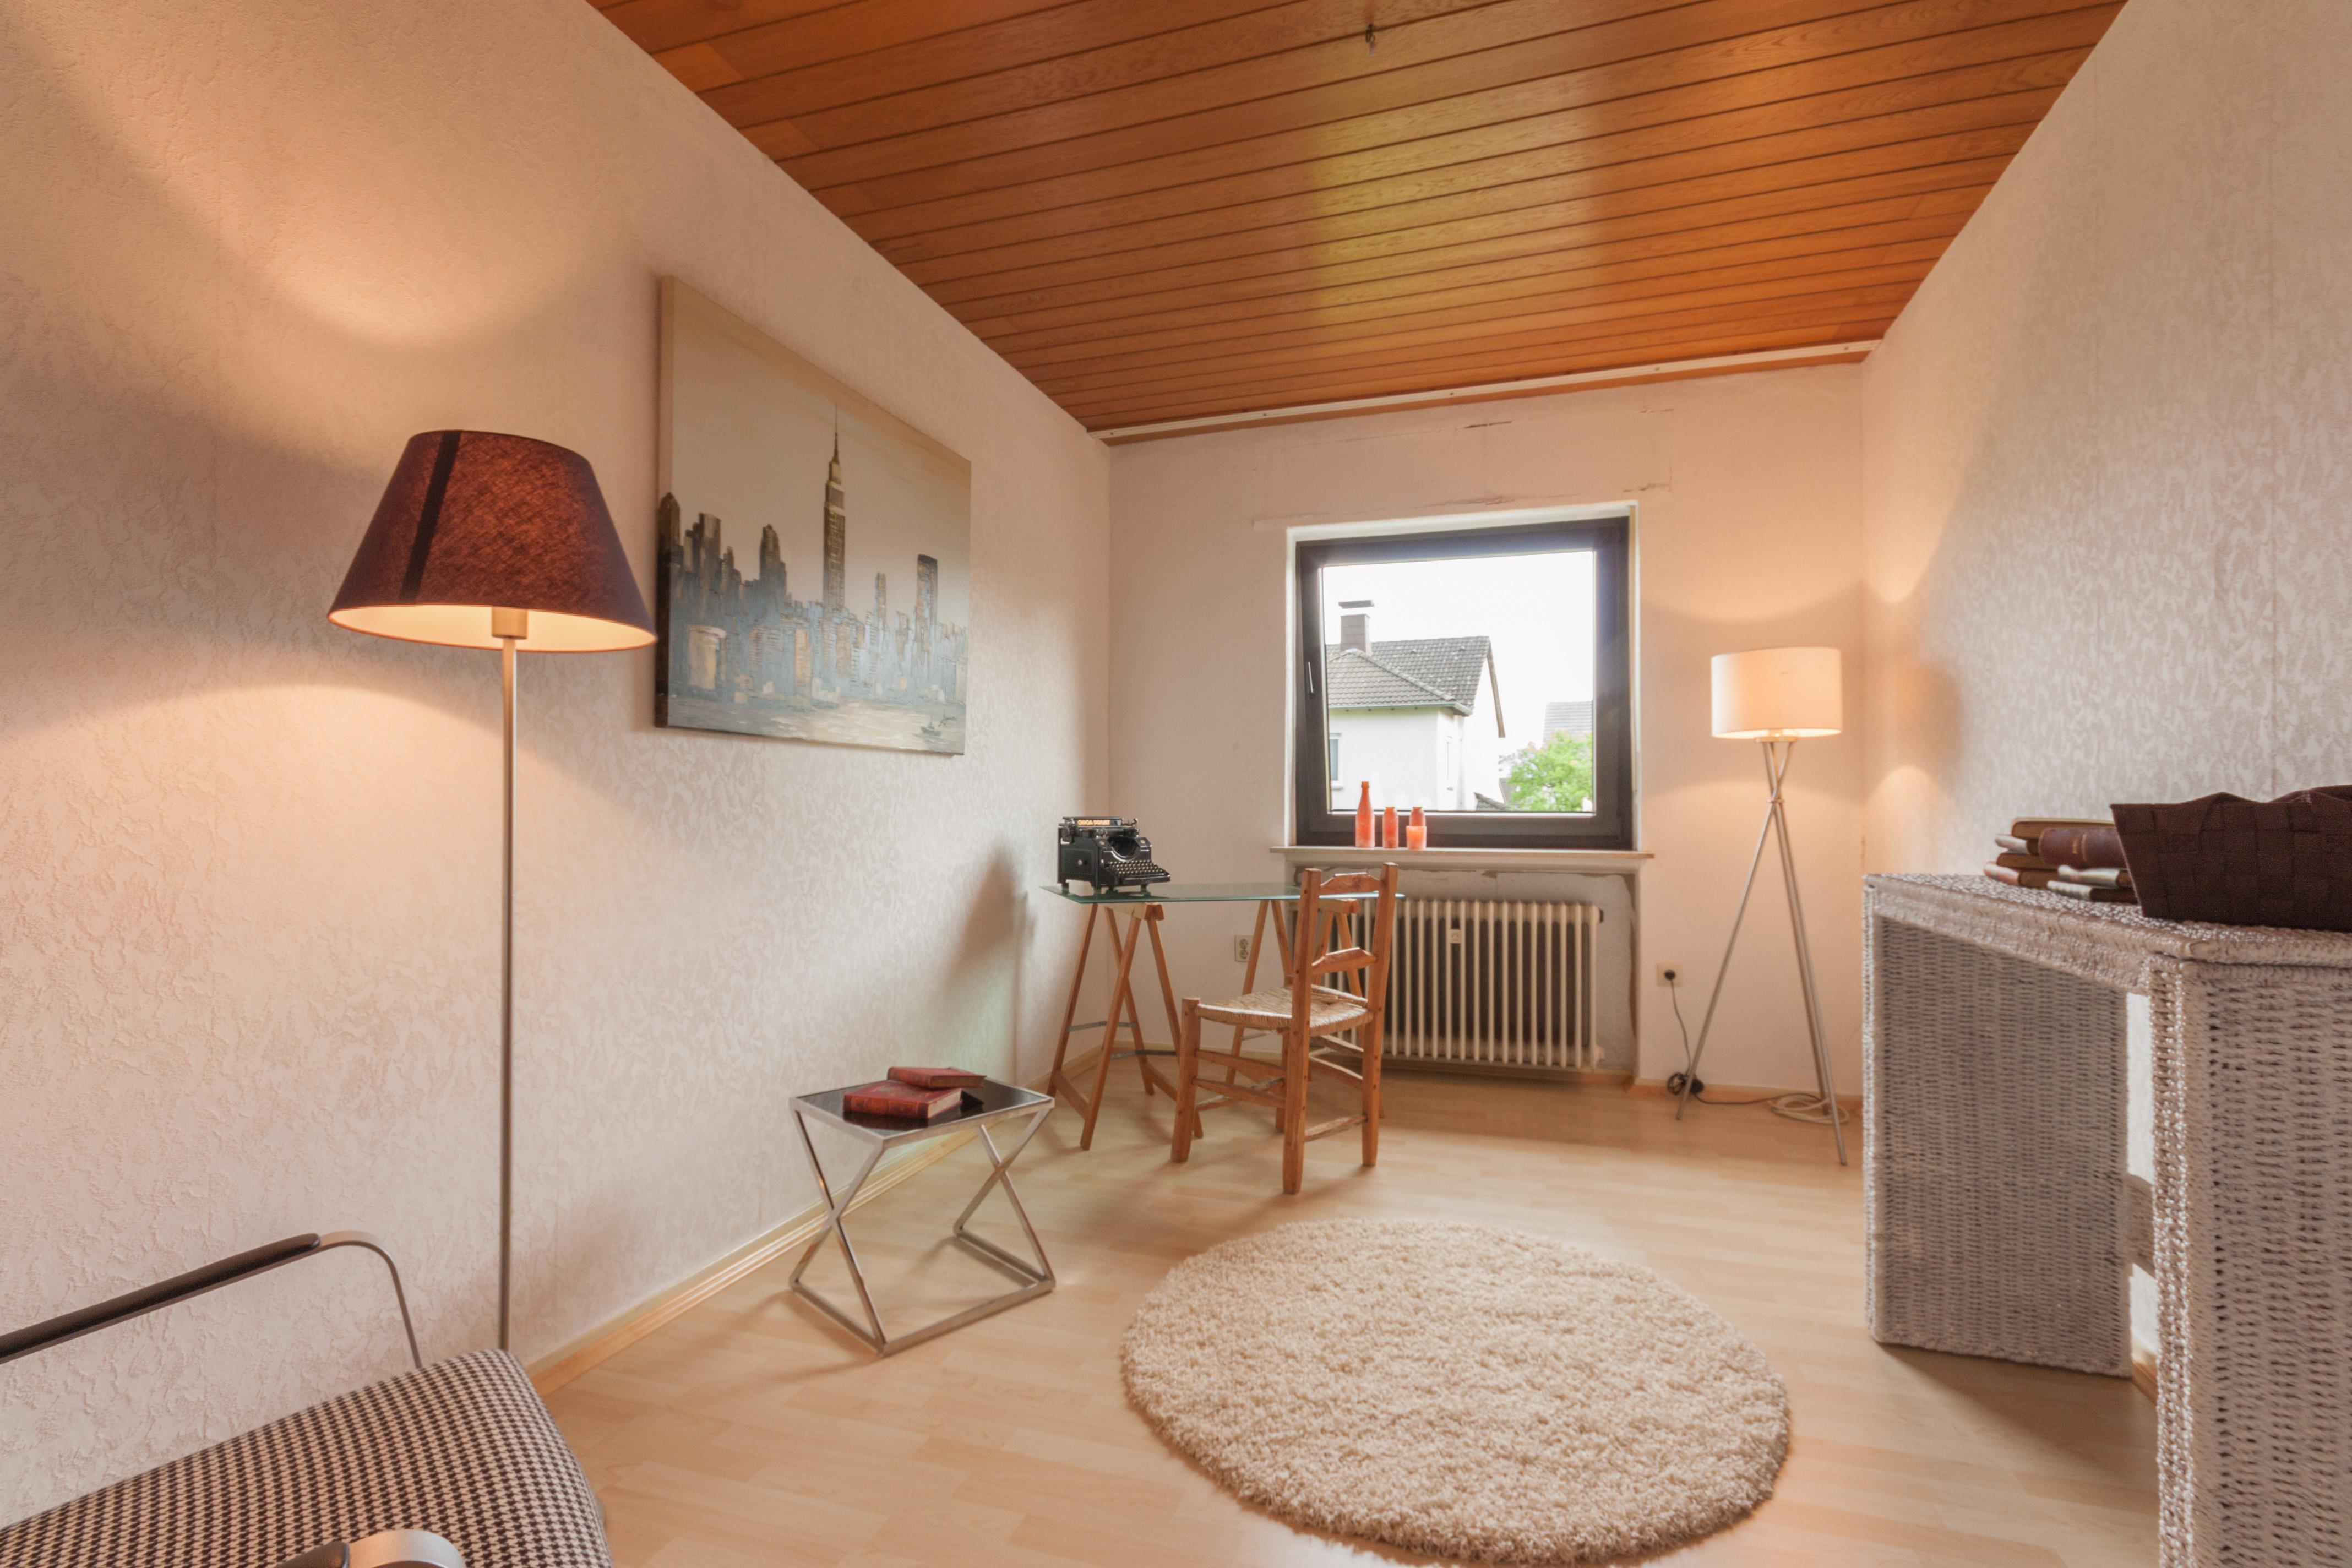 Arbeitszimmer - nachher #deckenpaneel #arbeitszimmer #stehlampe #runderteppich #klapptisch ©IMMOTION Home Staging / Florian Gürbig